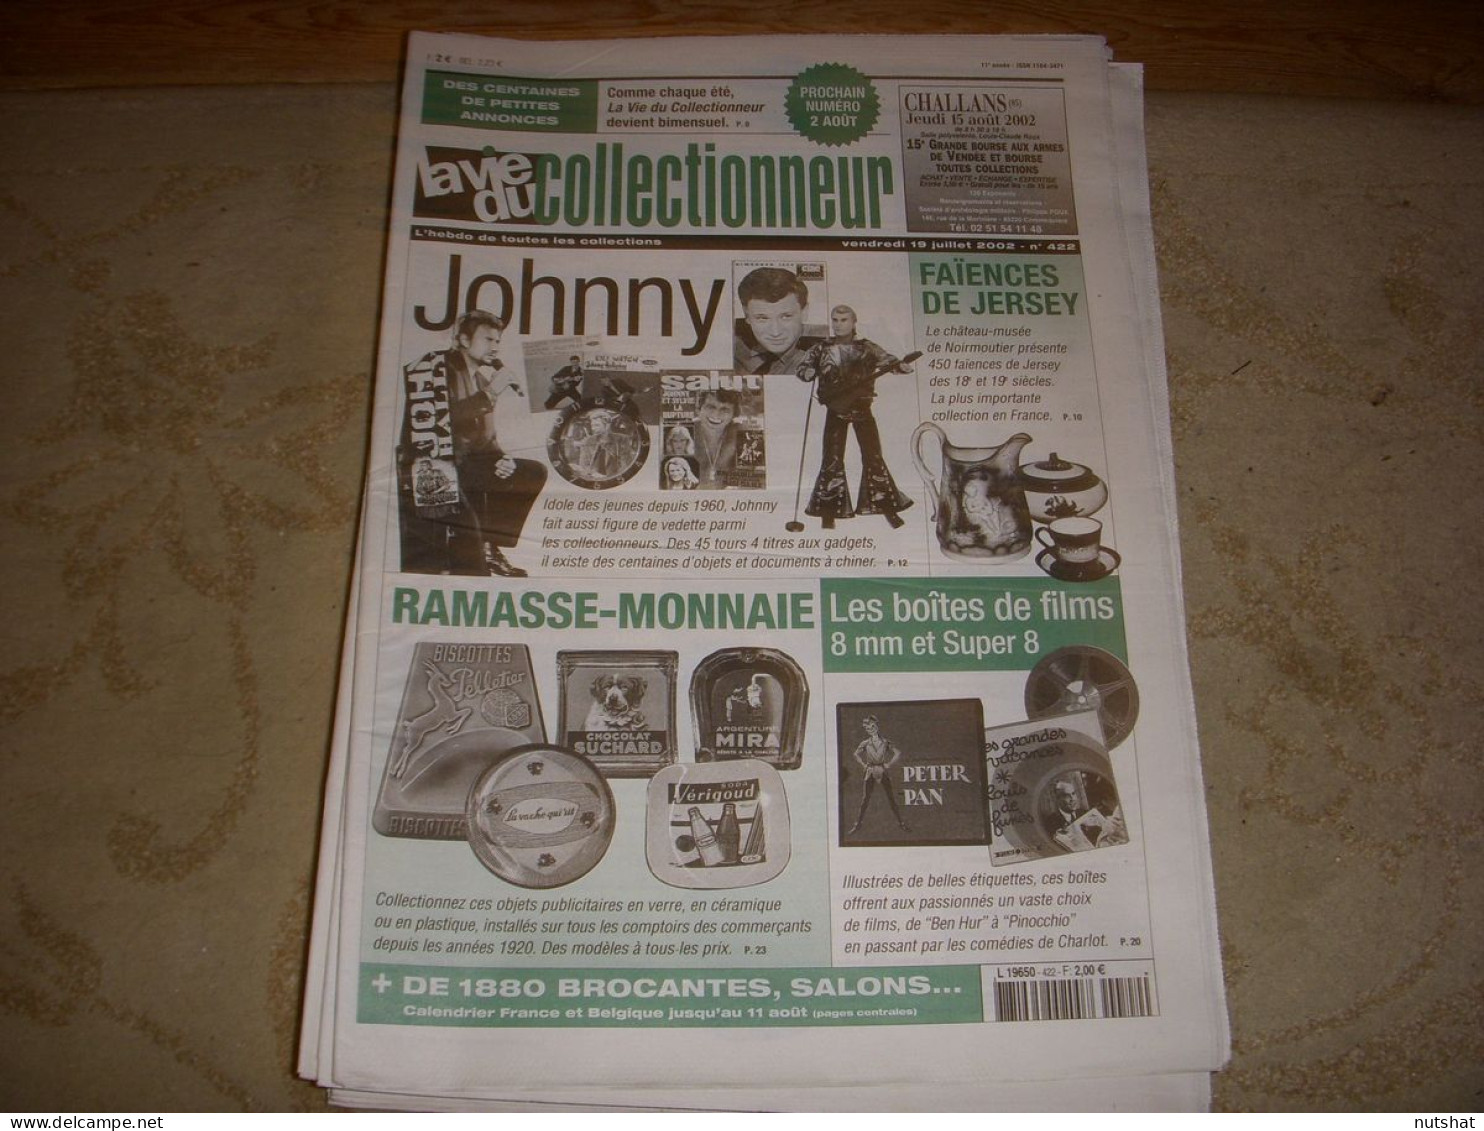 LVC VIE Du COLLECTIONNEUR 422 07.2002 JOHNNY HALLIDAY BOITES De FILMS 8mm  - Verzamelaars